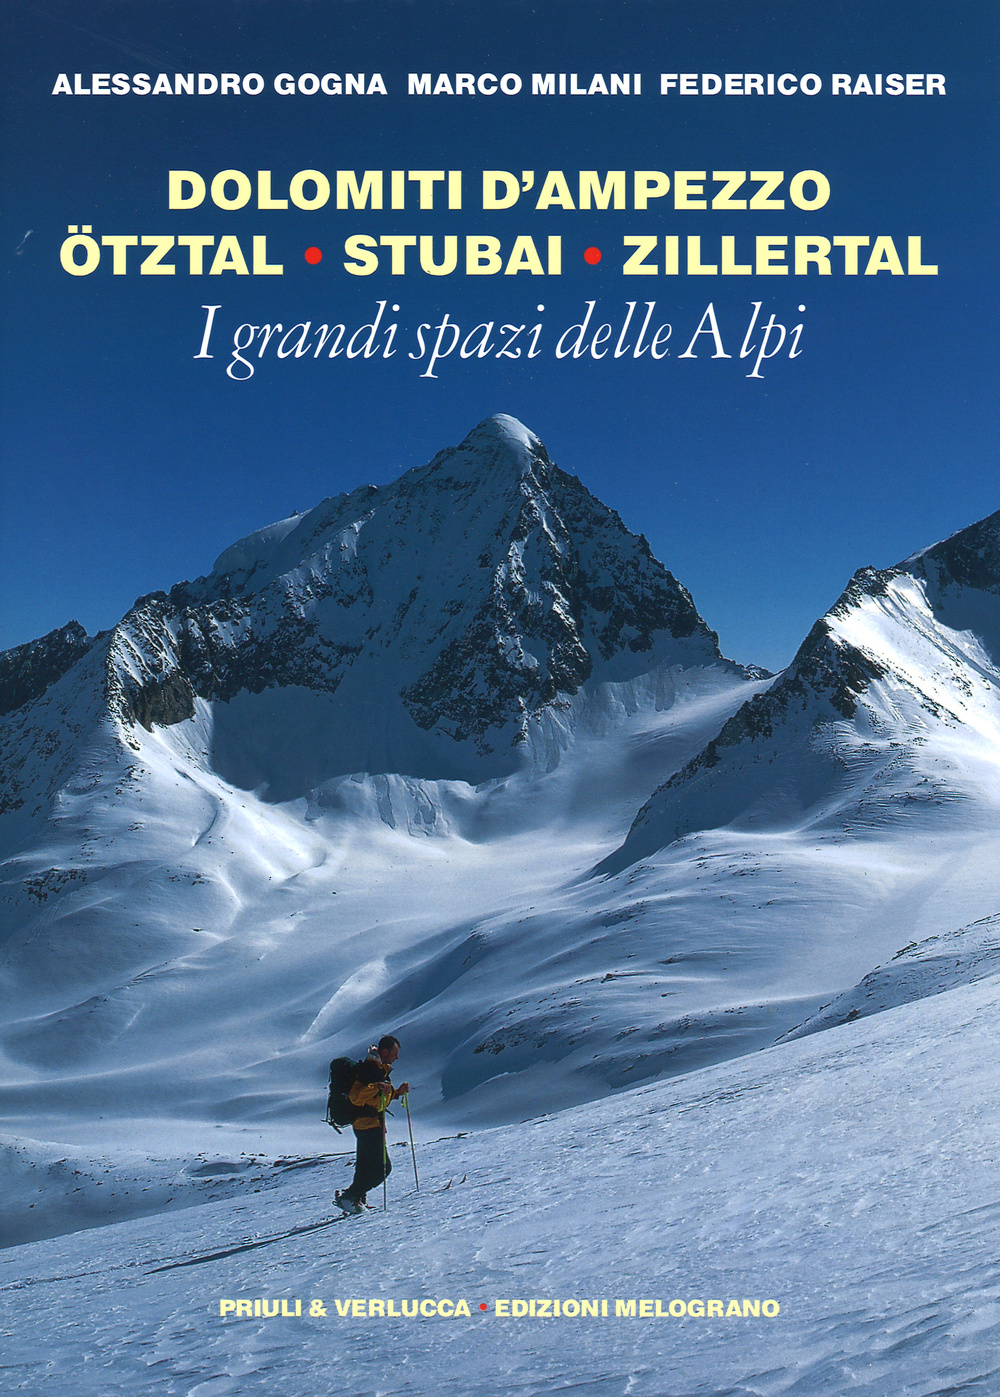 I grandi spazi delle Alpi. Ediz. illustrata. Vol. 6: Dolomiti d'Ampezzo, Ötztal, Stubai, Zillertal